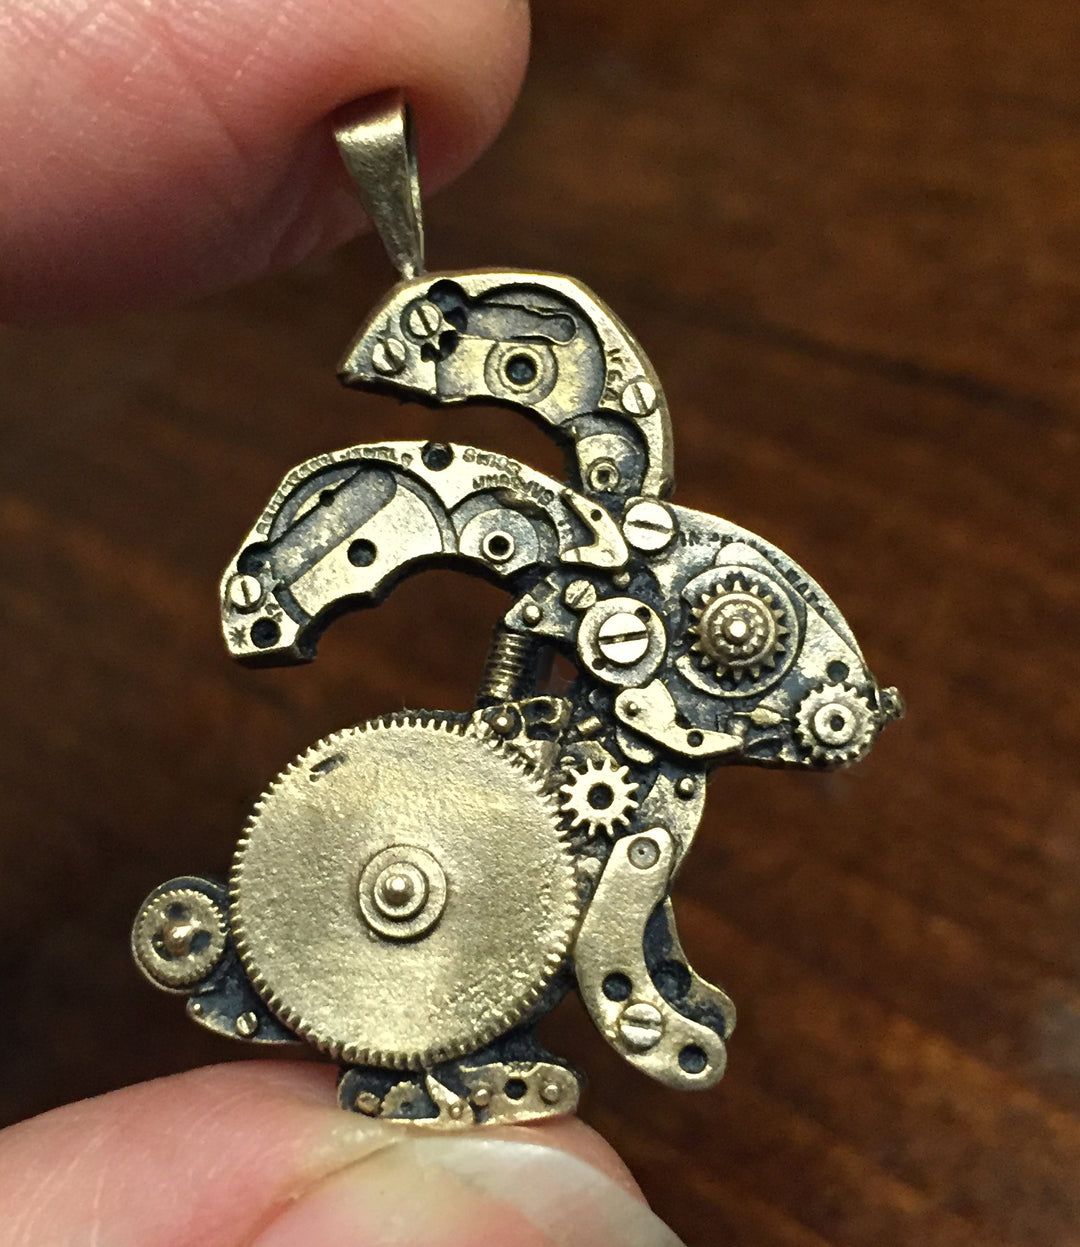 Sue Beatrice's small watch parts bunny pendant in bronze held between 2 fingers.